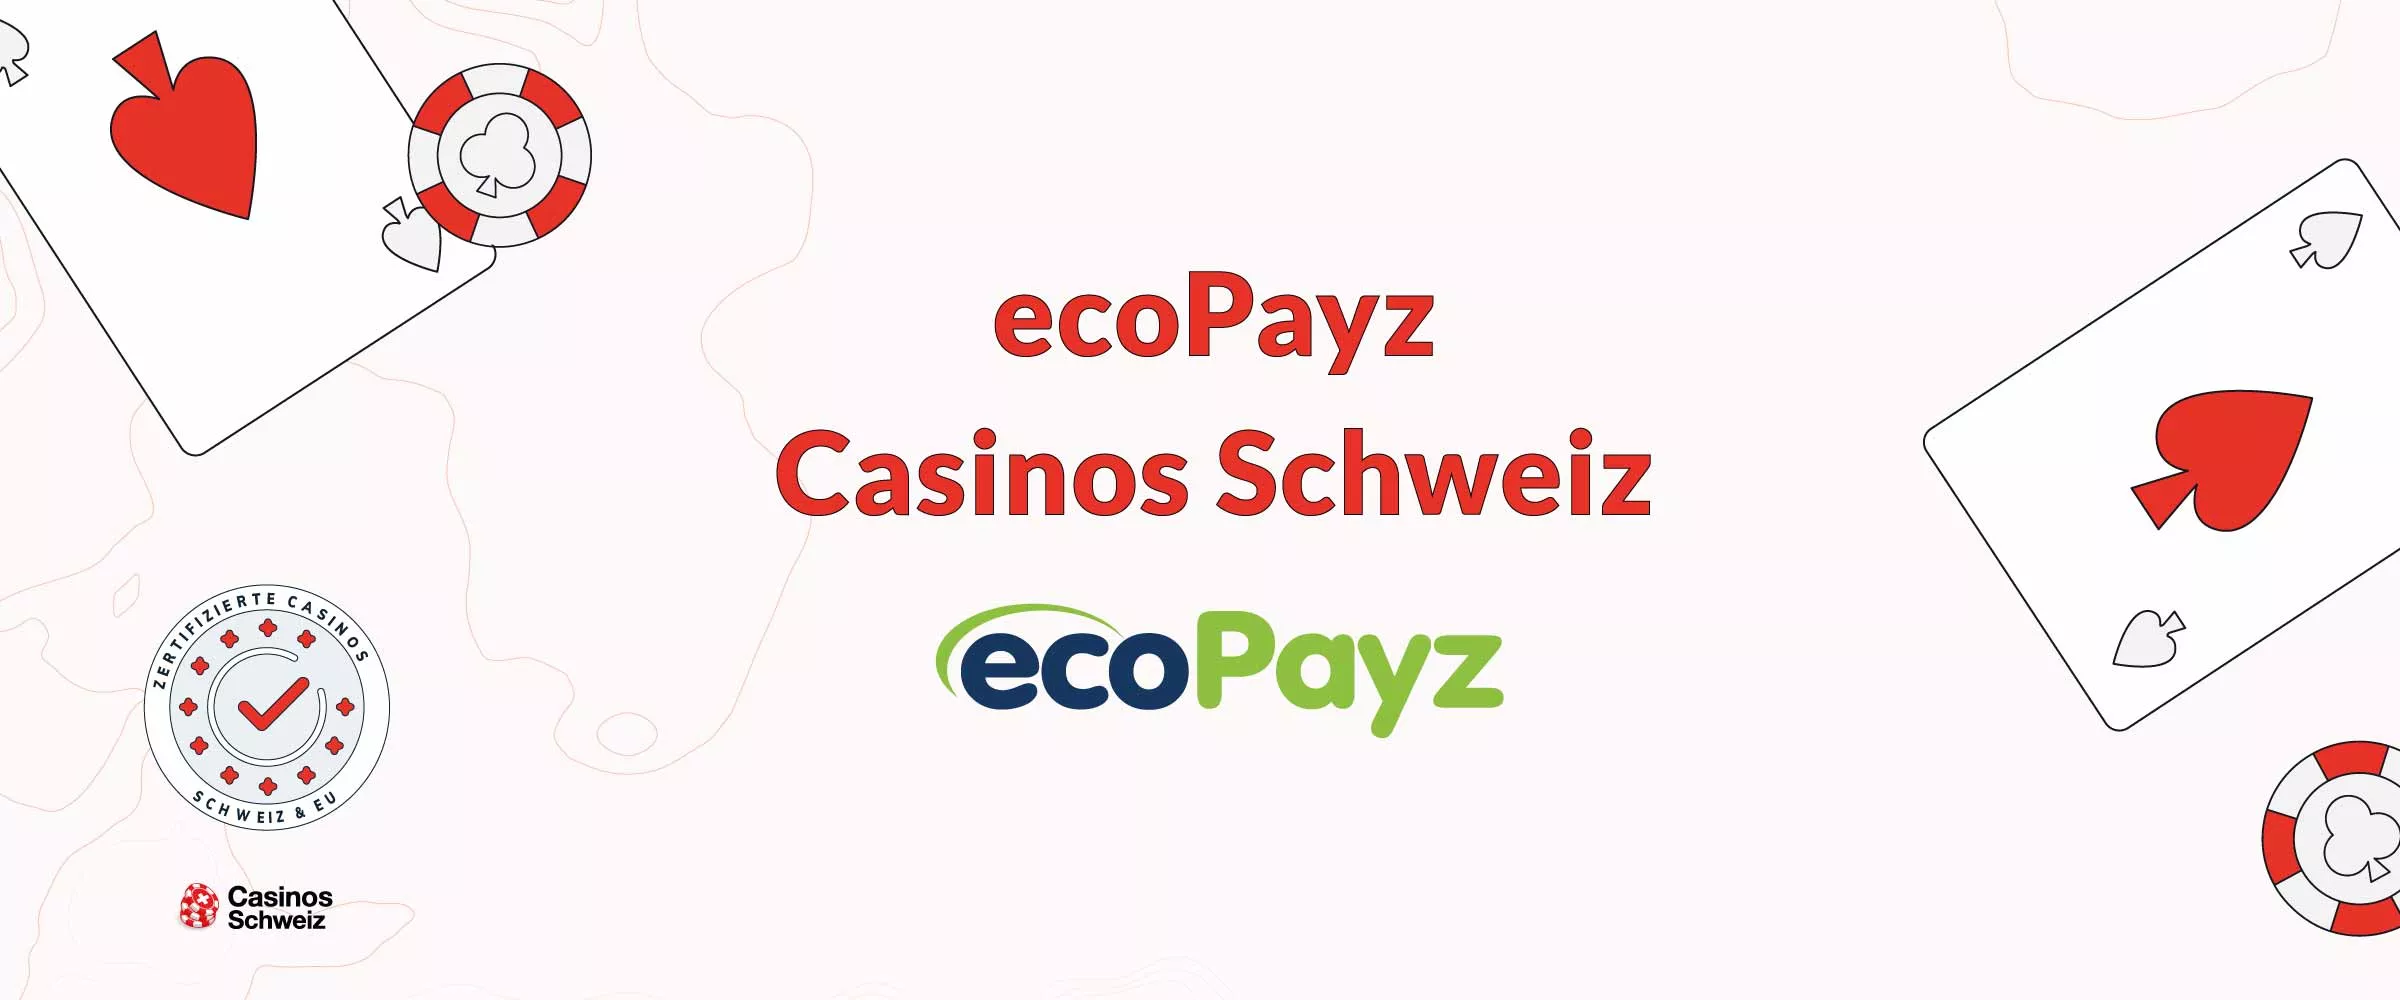 ecoPayz Casinos Schweiz